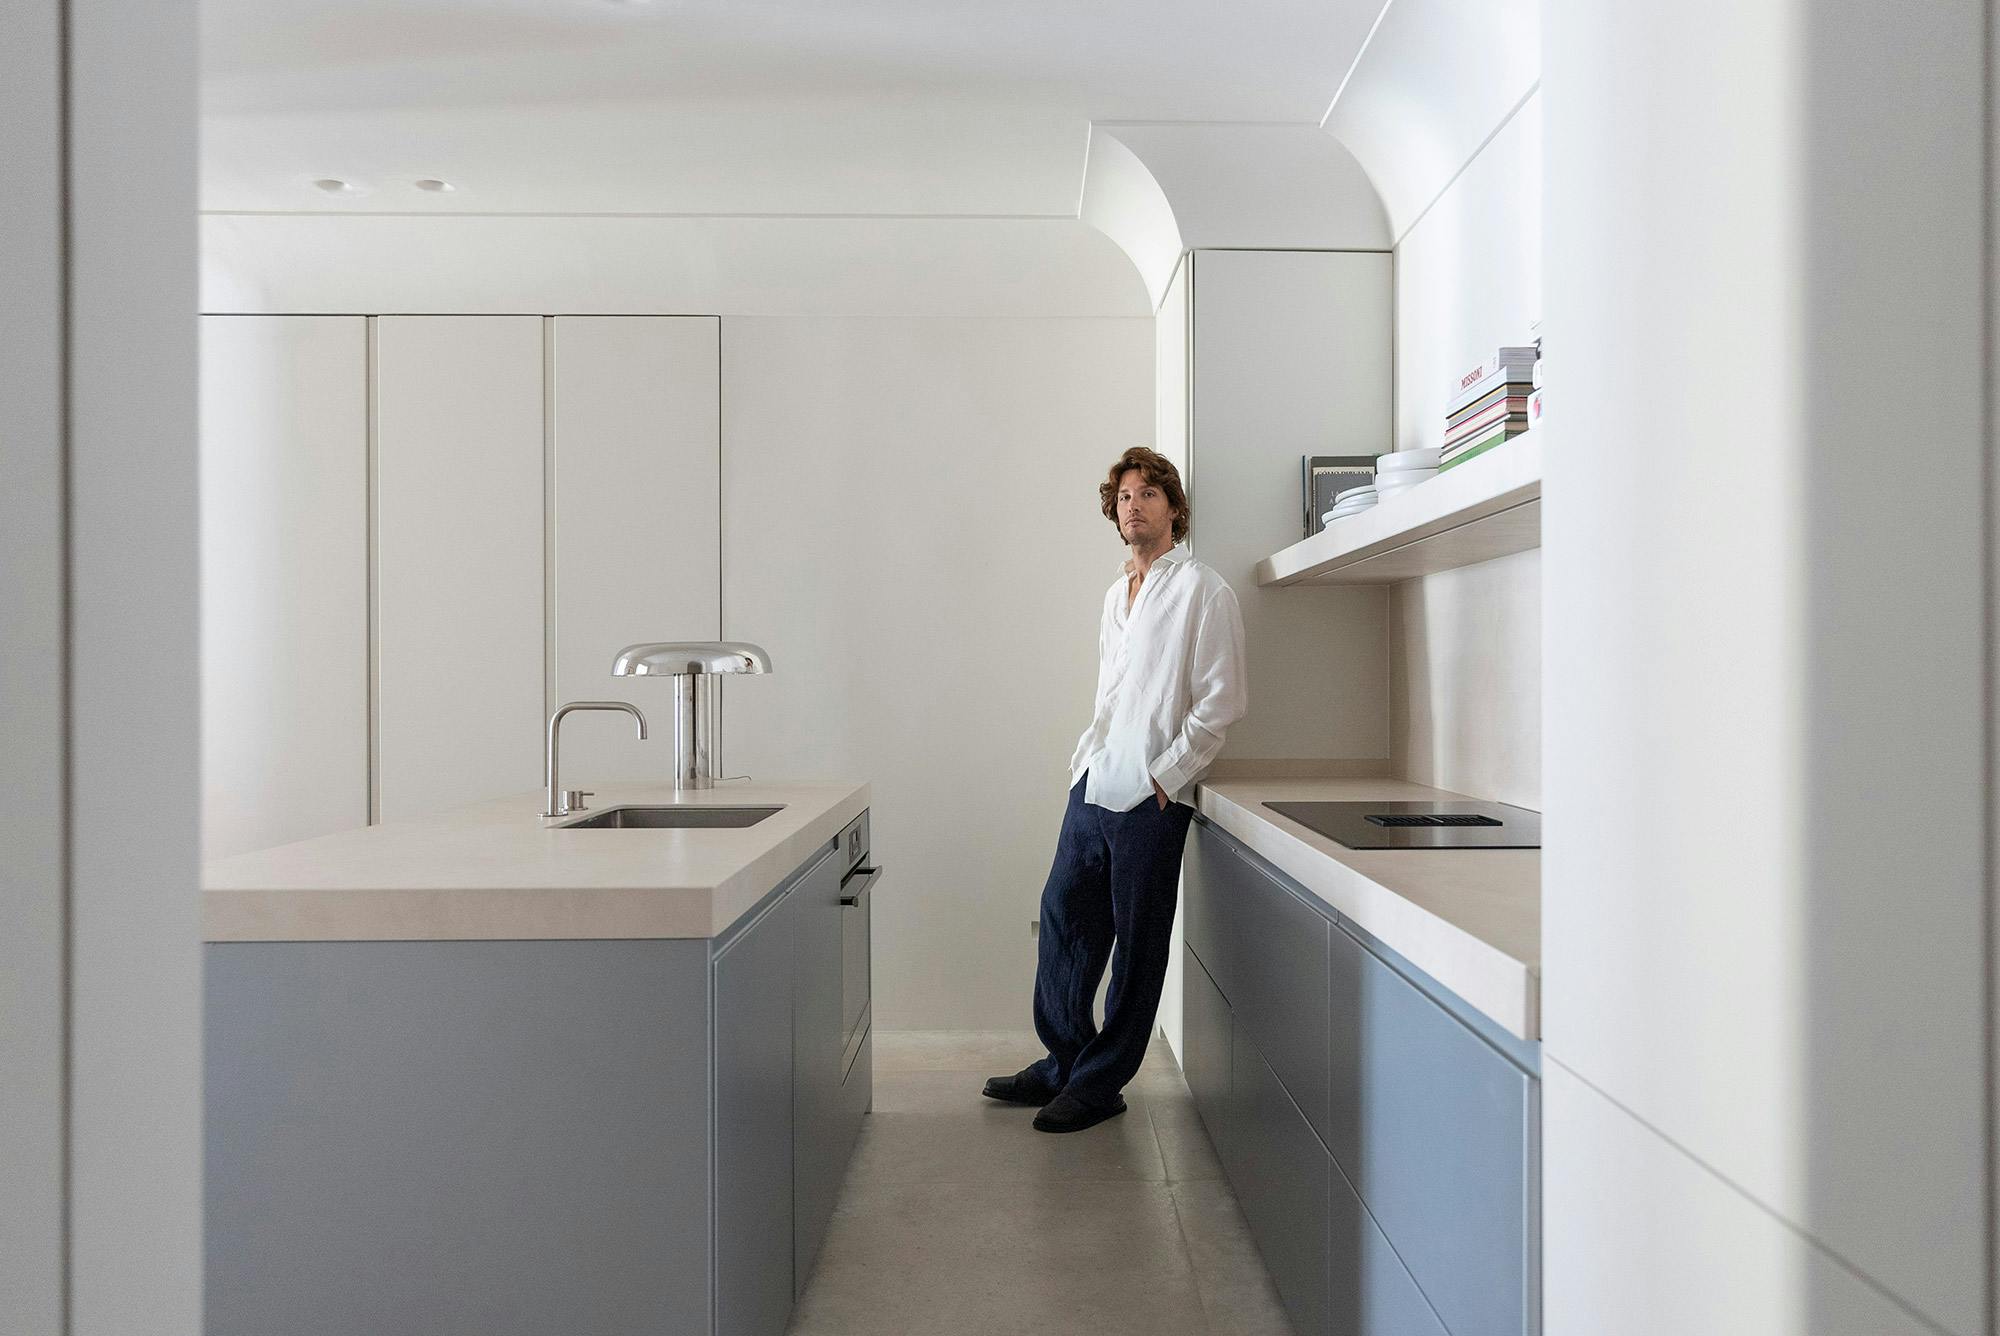 Numero immagine 38 della sezione corrente di Architect and interior designer Memmu Pitkänen chose the beautiful DKTN Helena for her kitchen di Cosentino Italia